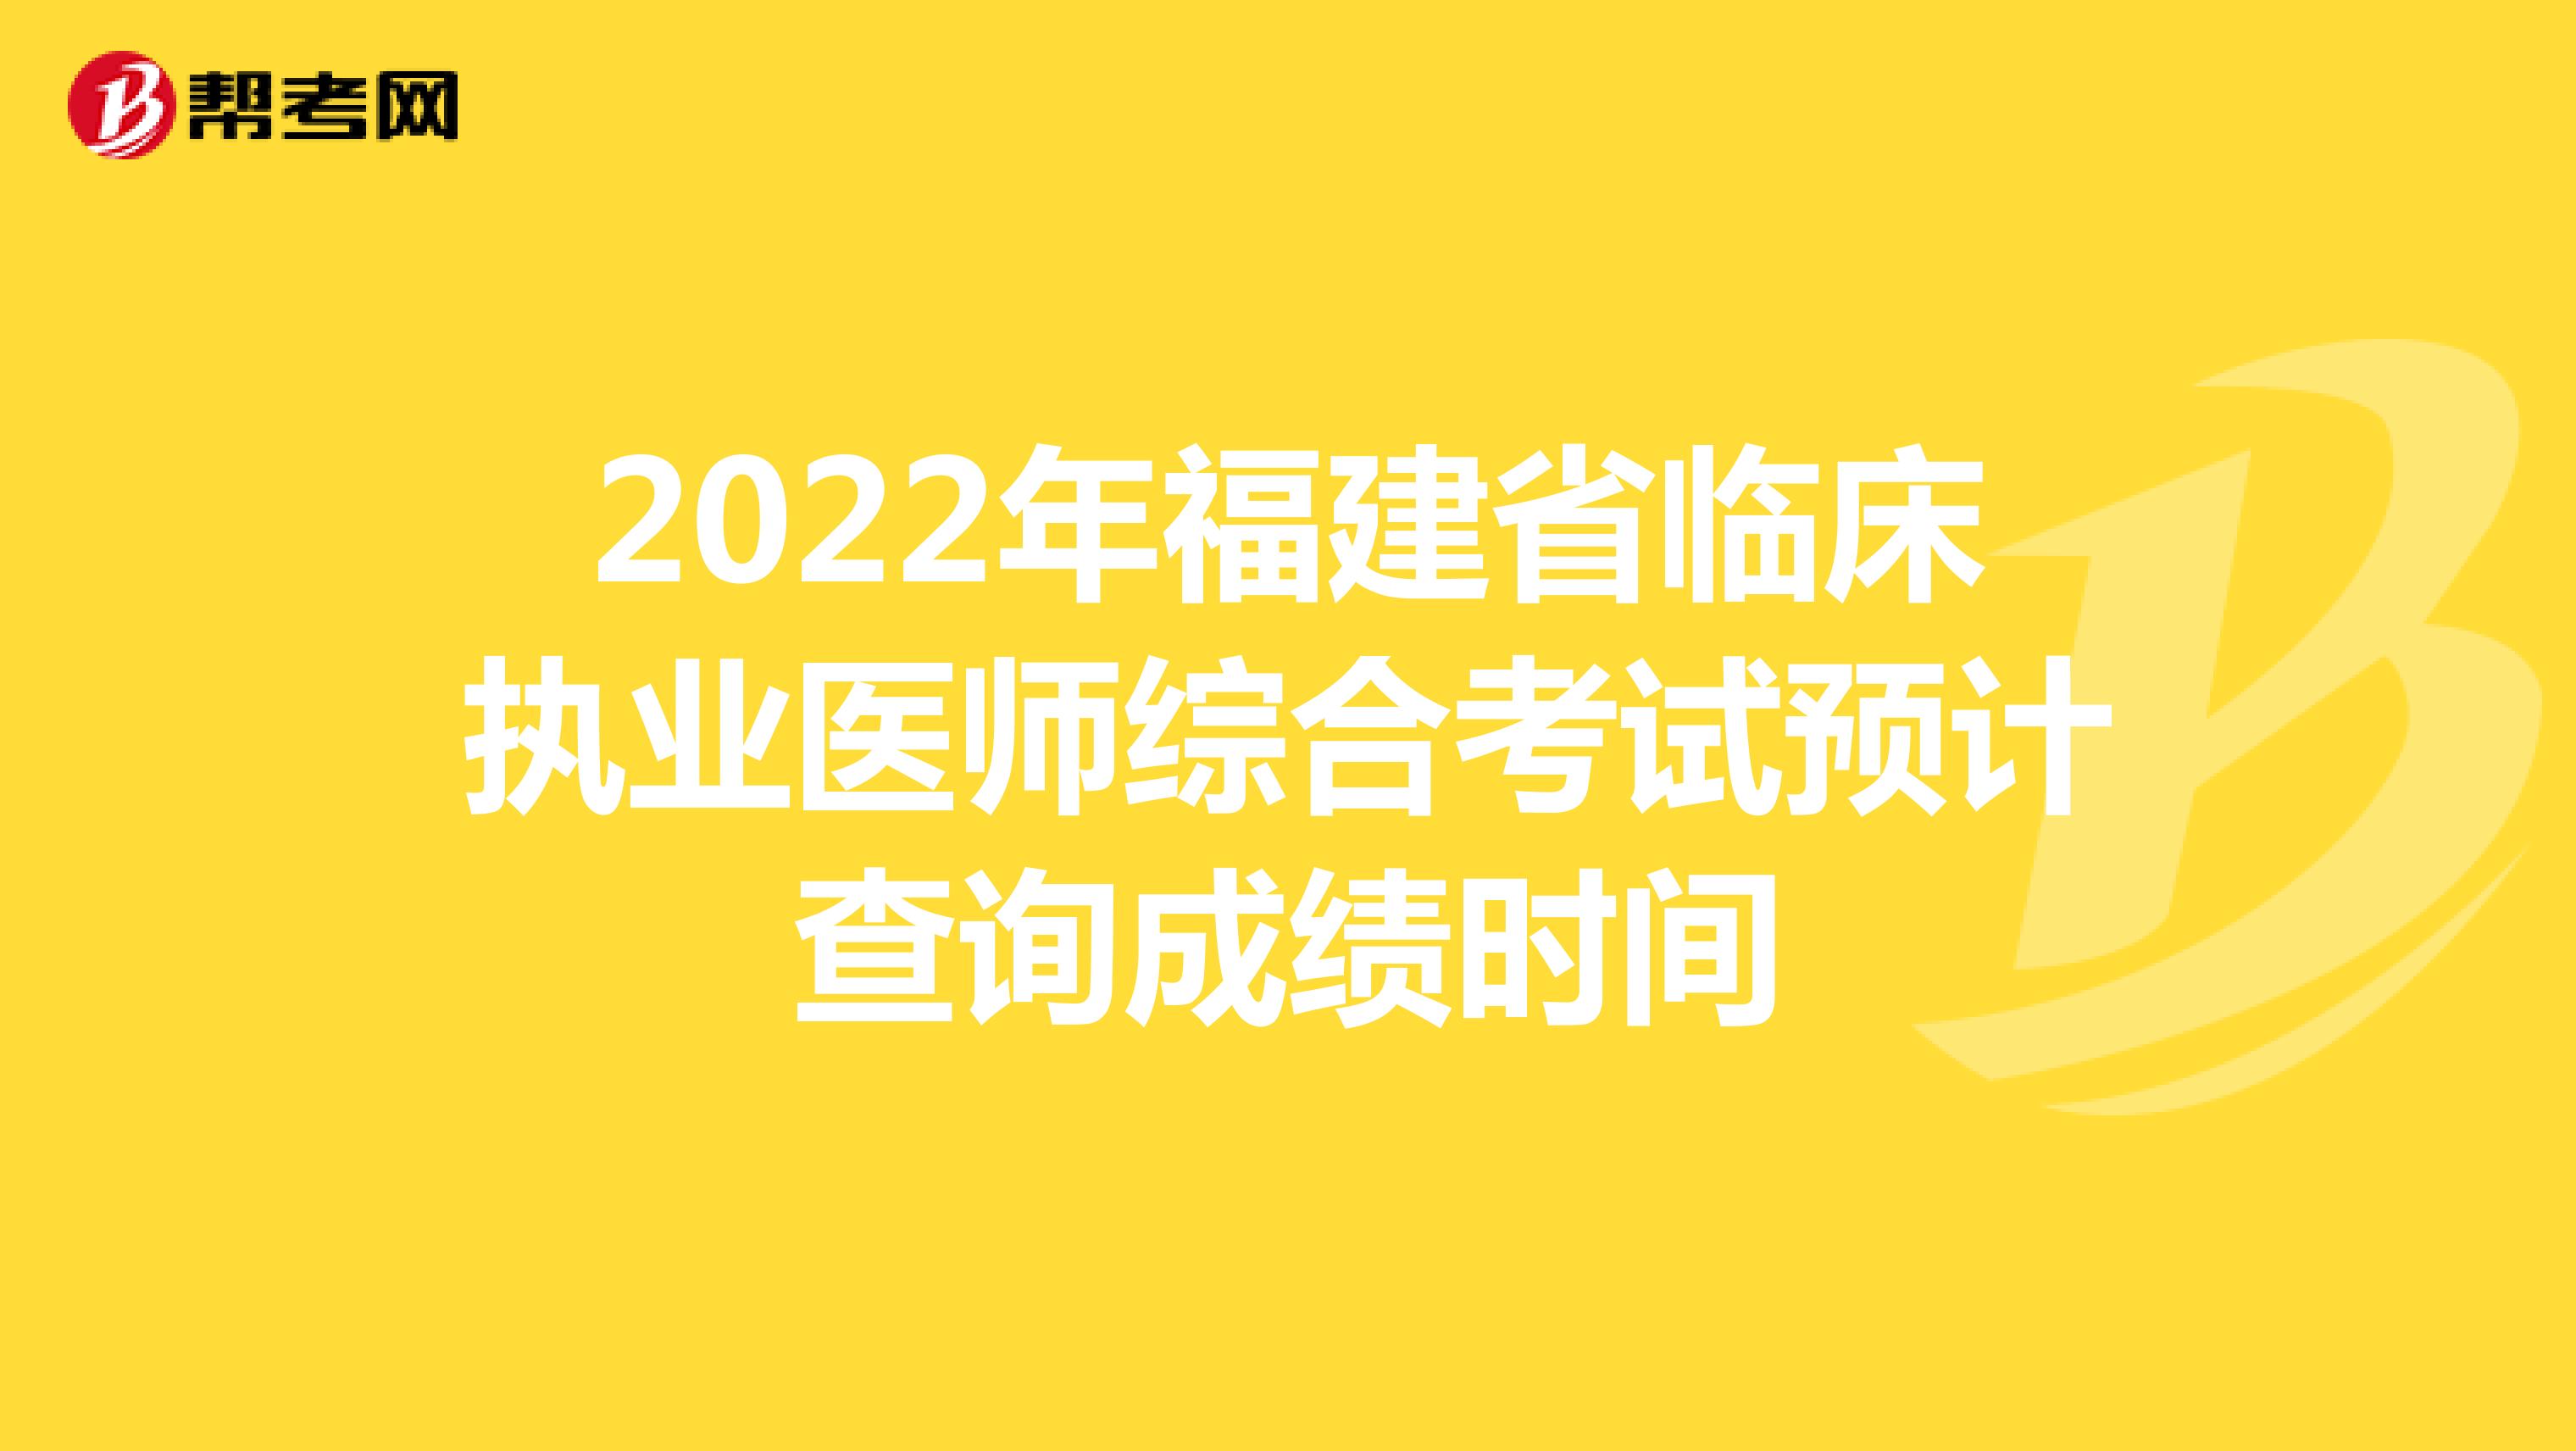 2022年福建省临床执业医师综合考试预计查询成绩时间